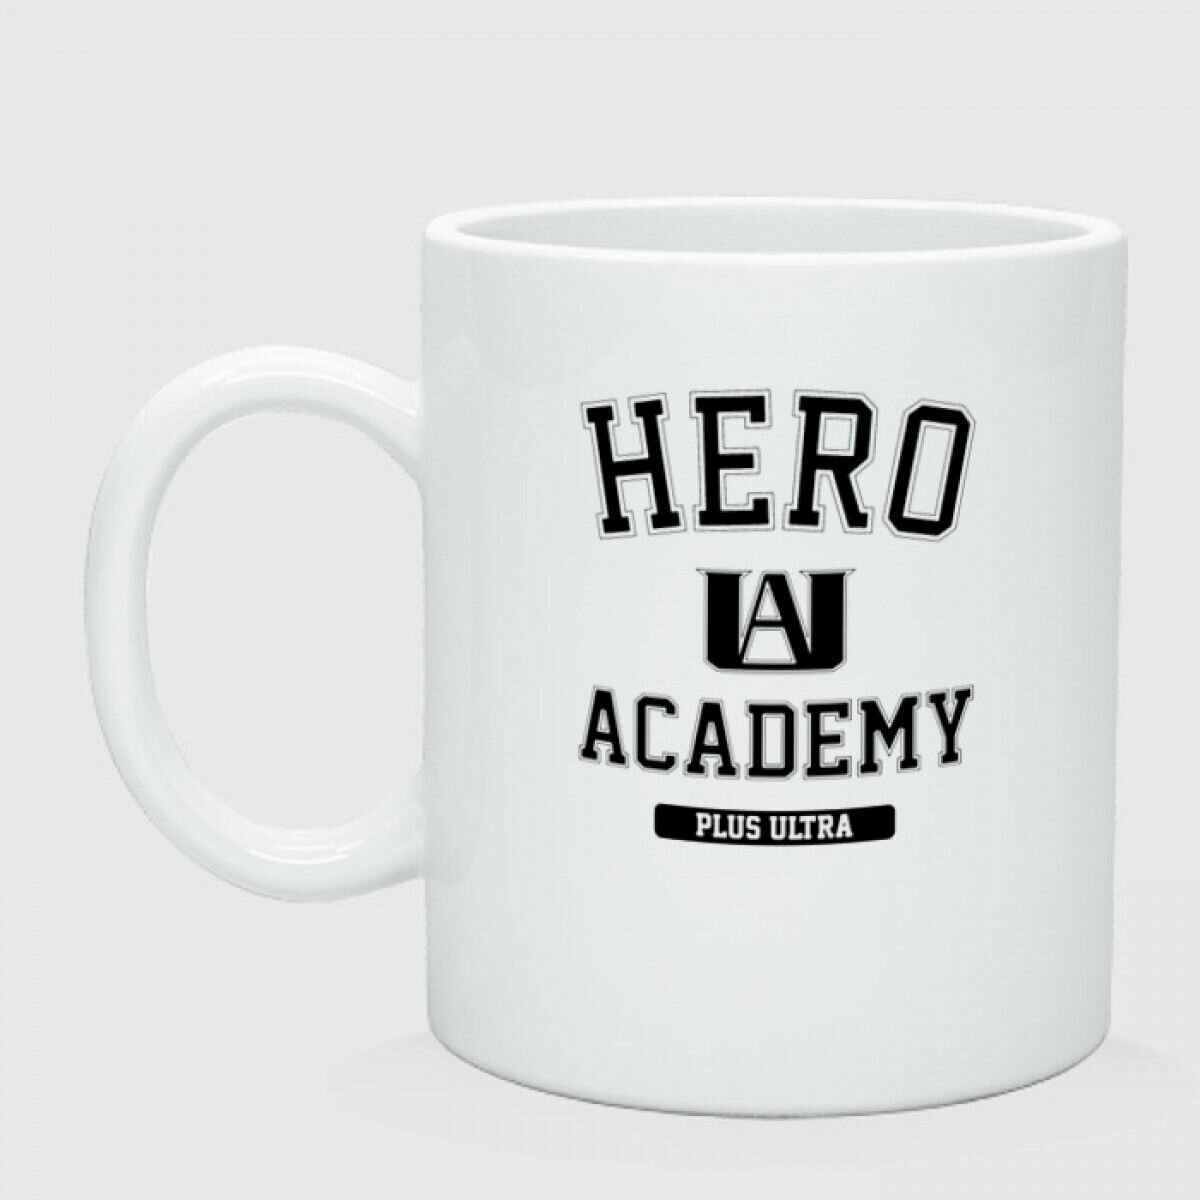 Кружка керамическая"Моя геройская академия - My Hero Academy - Plus Ultra"